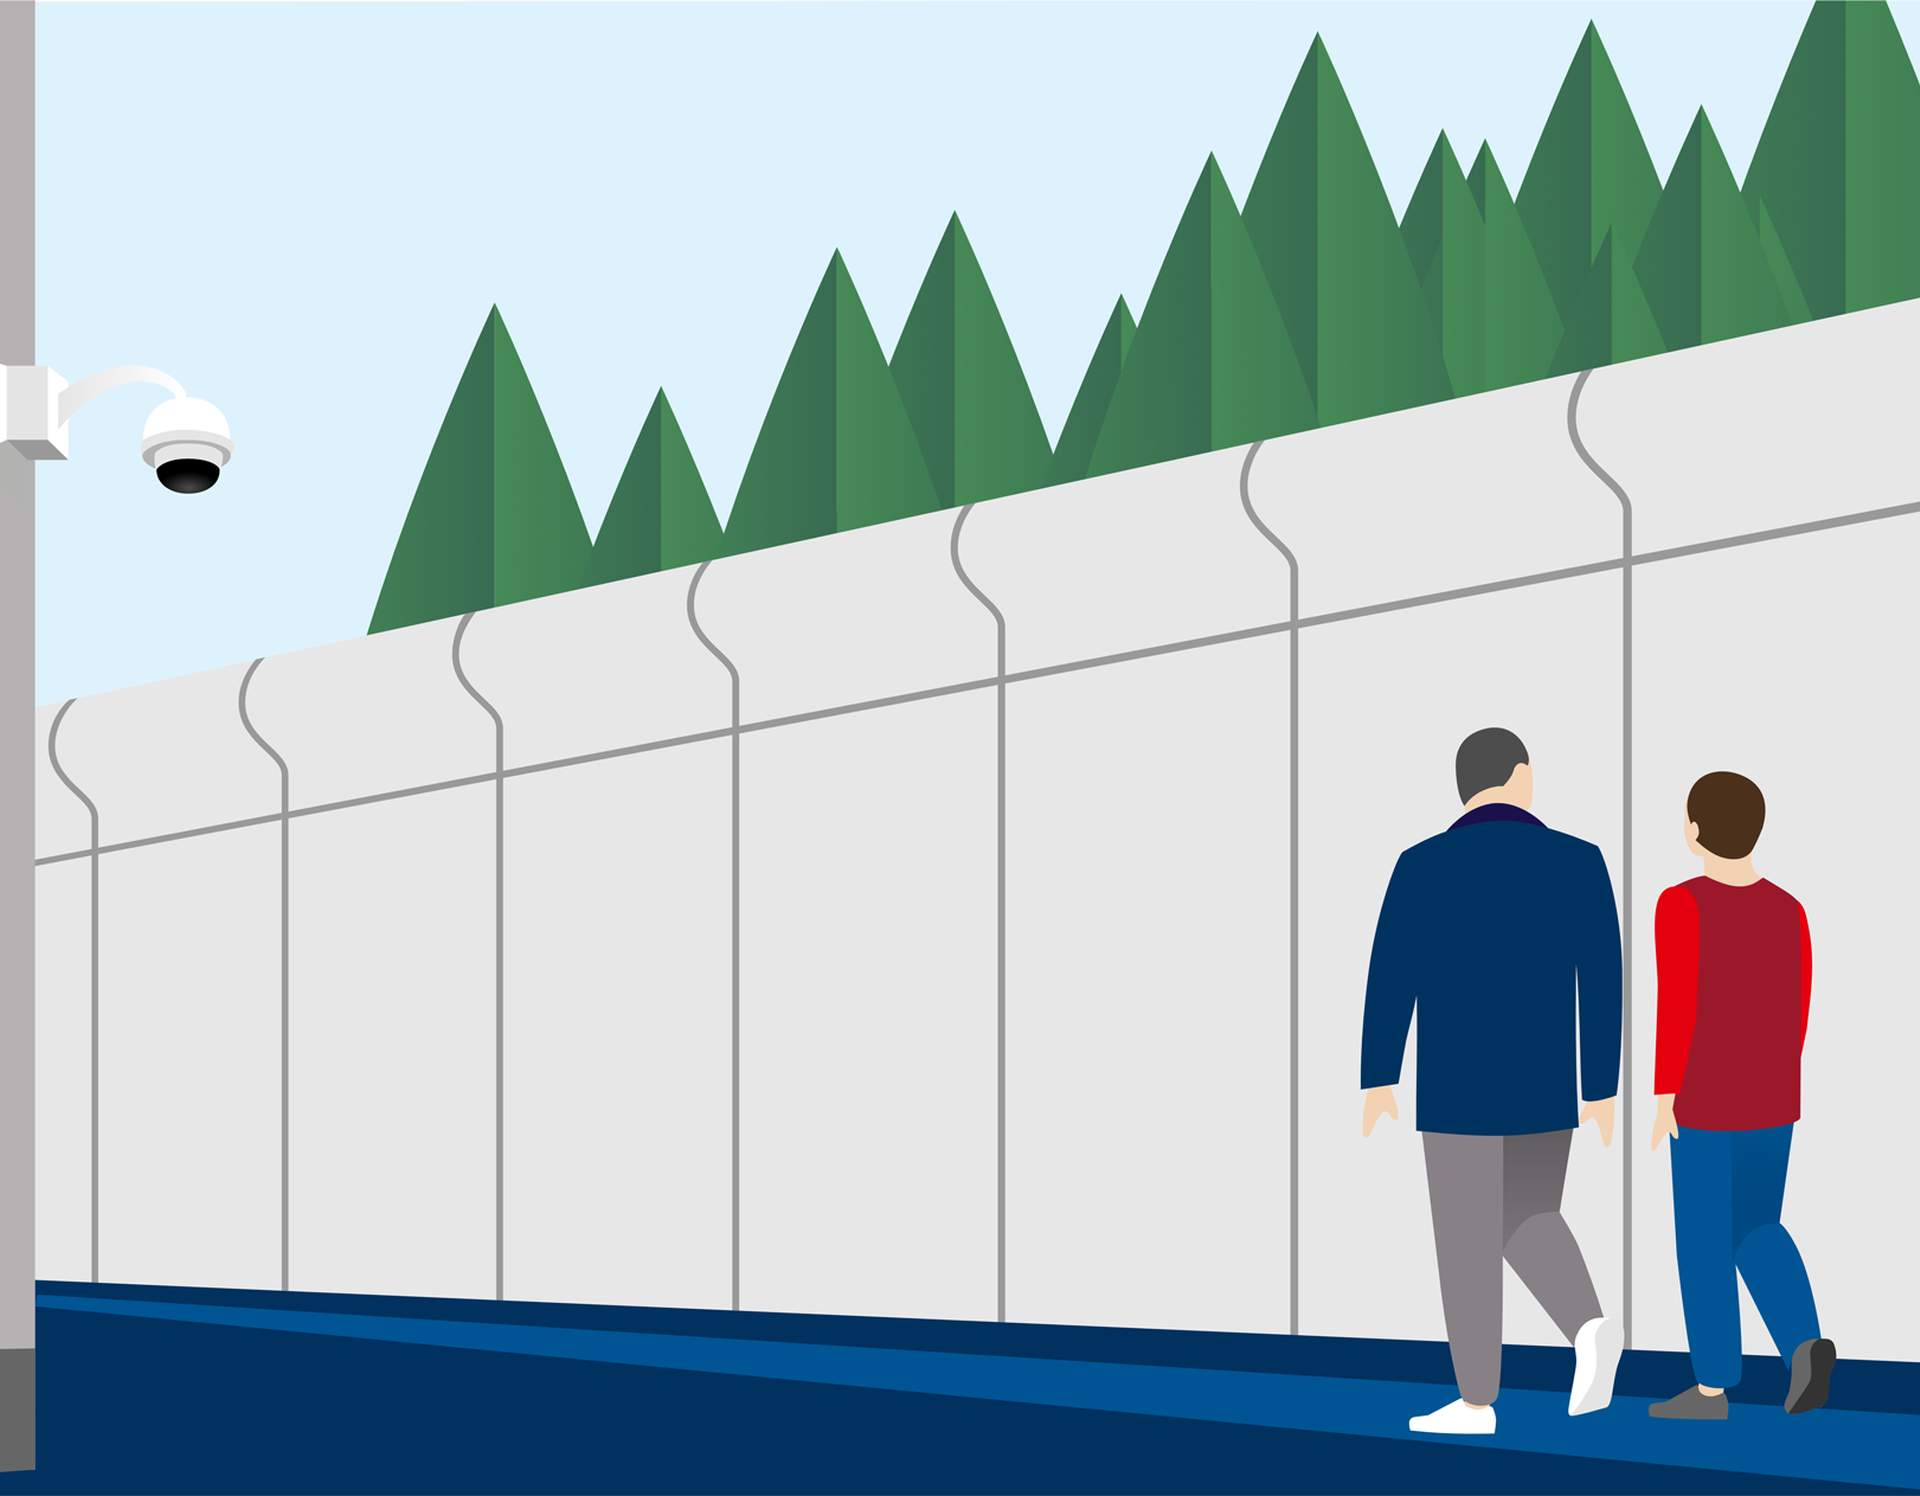 Illustration zweier Personen, die an einer hohen Mauer vorbeigehen, die kameraüberwacht ist.